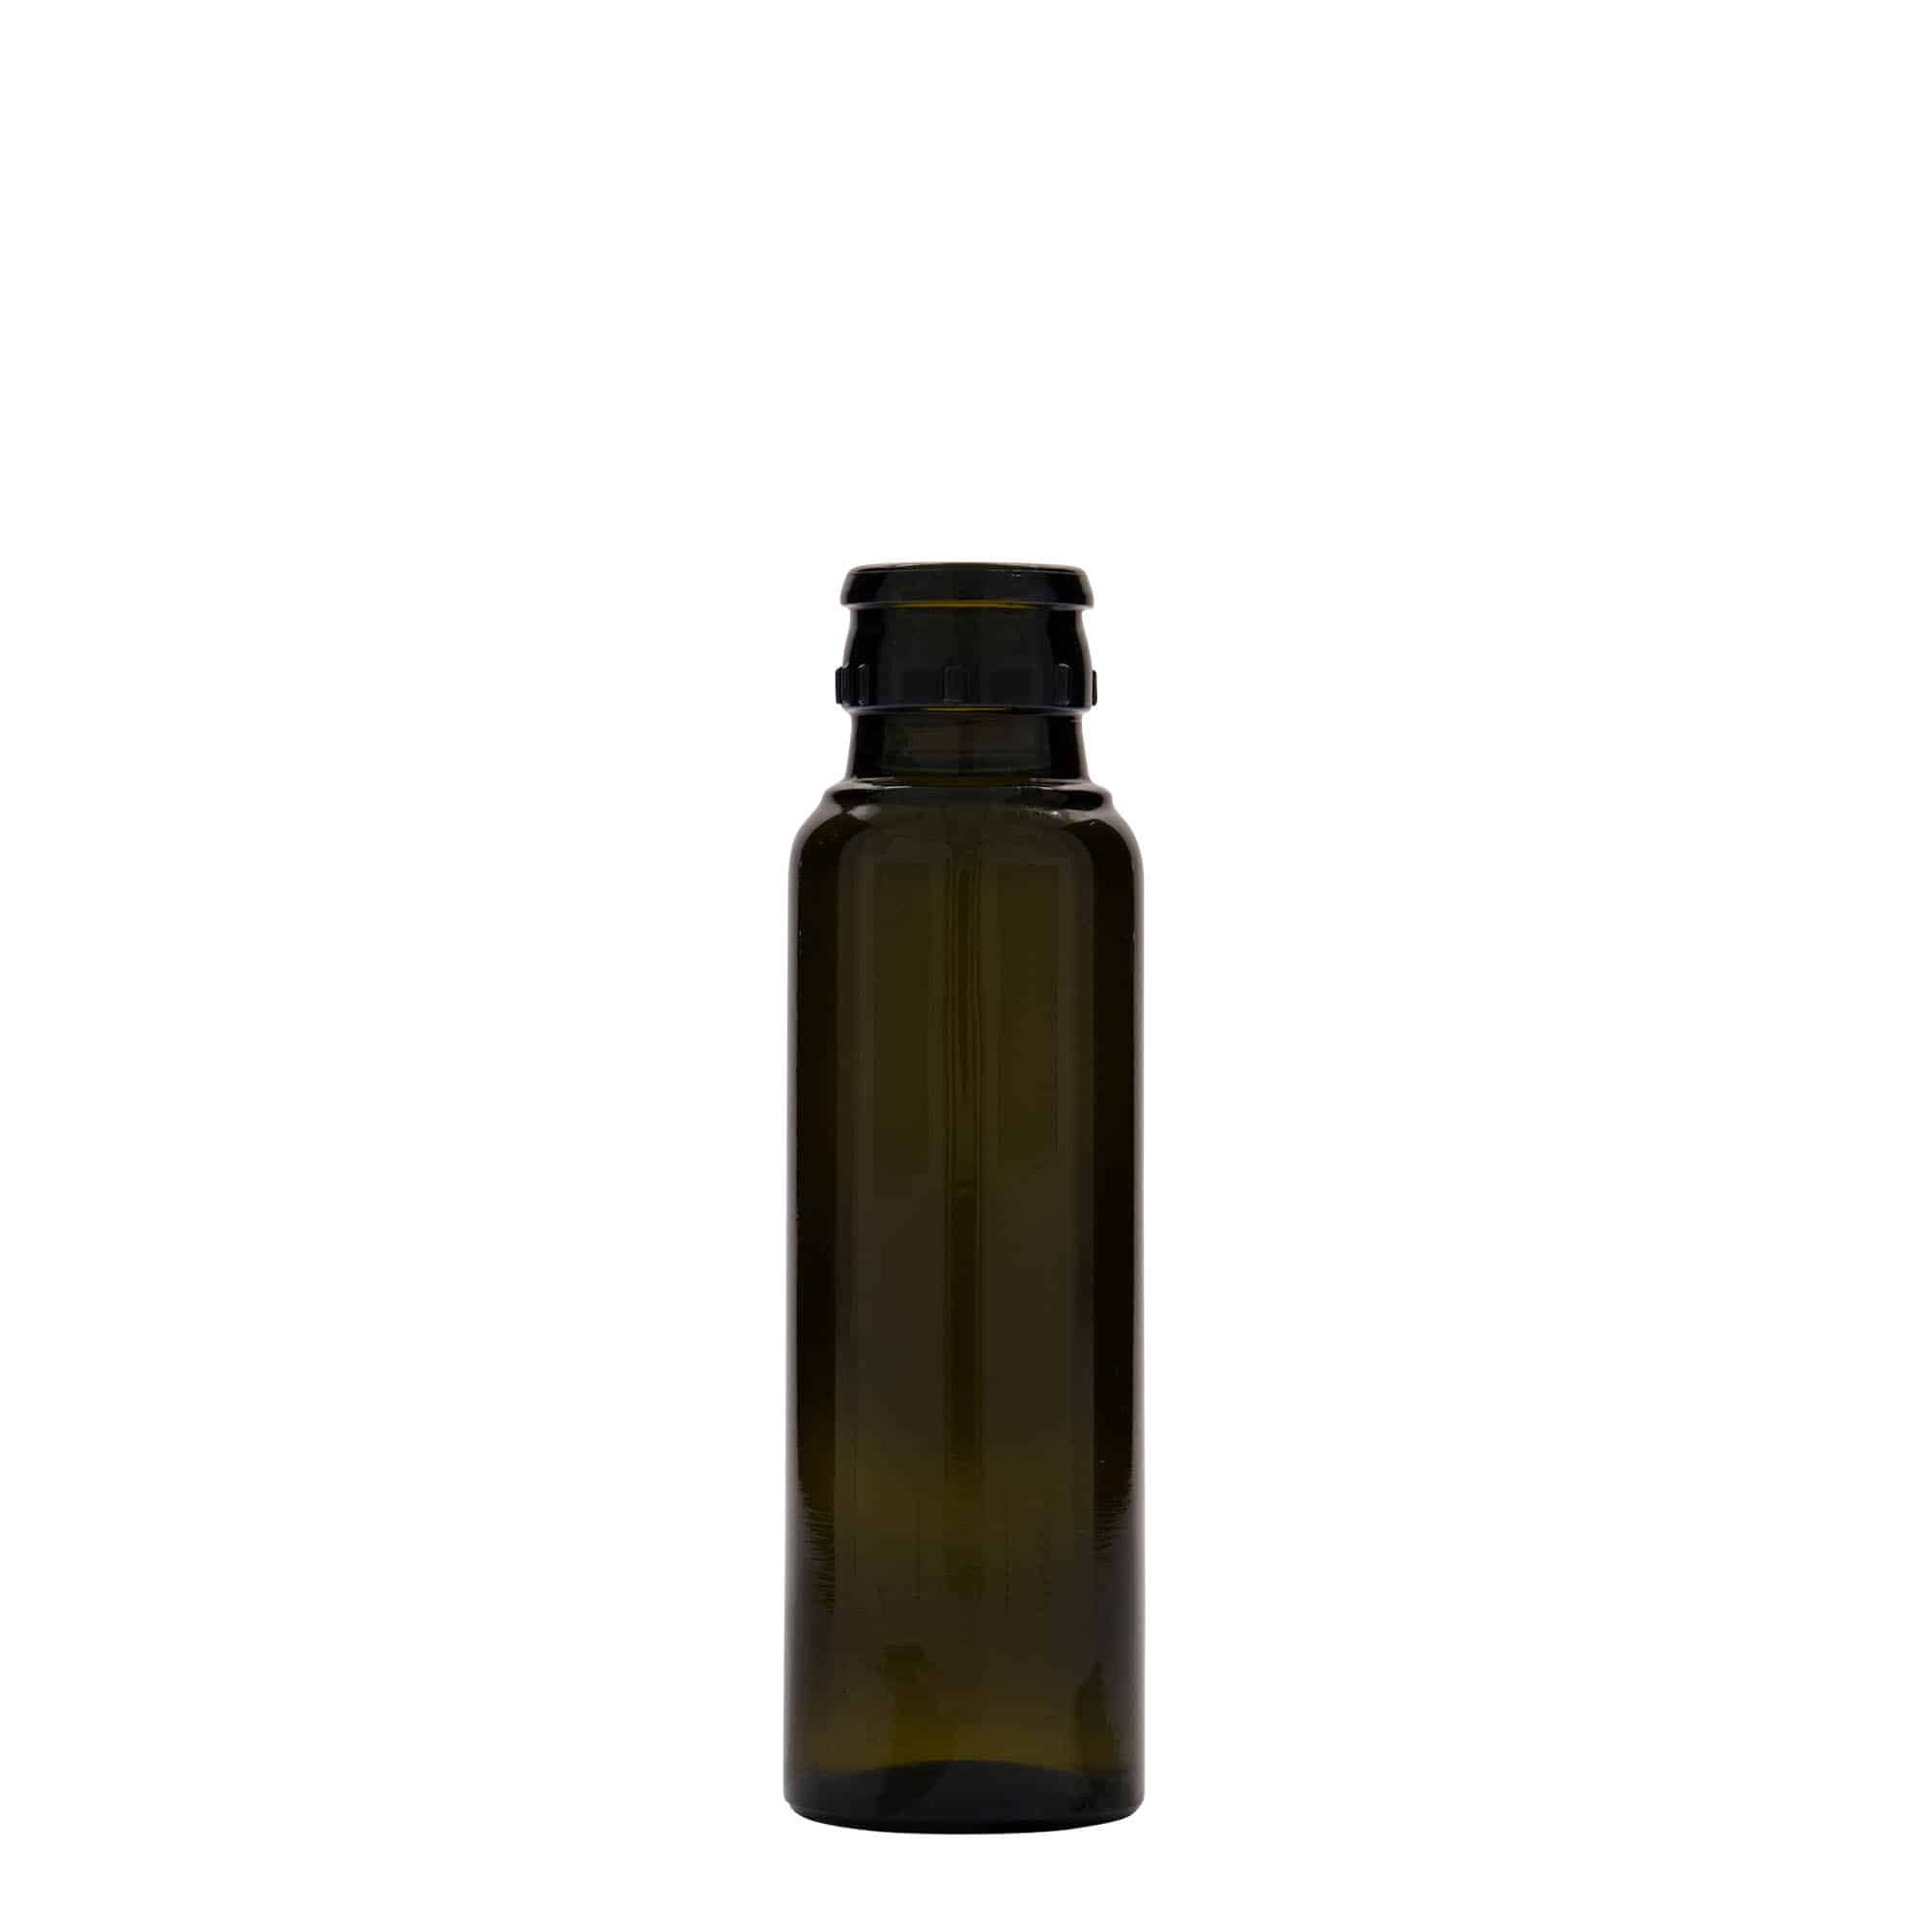 100 ml butelka na ocet/olej 'Willy New', szkło, kolor zielony antyczny, zamknięcie: DOP